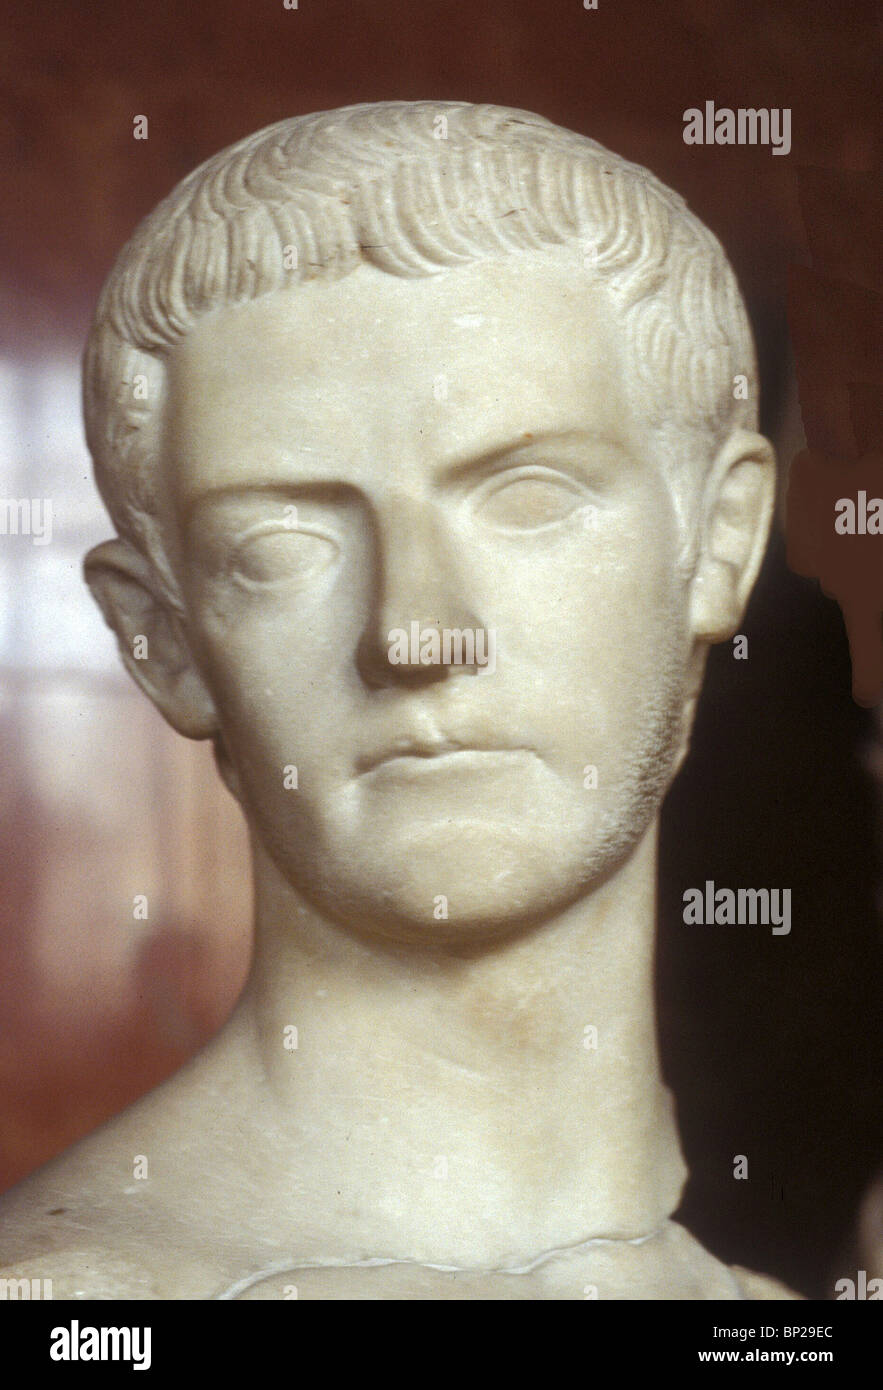 2997. Buste en marbre DE C A L I G U L A , EMPEREUR DE ROME DE 37 À 41 VOTRE ANNONCE Banque D'Images